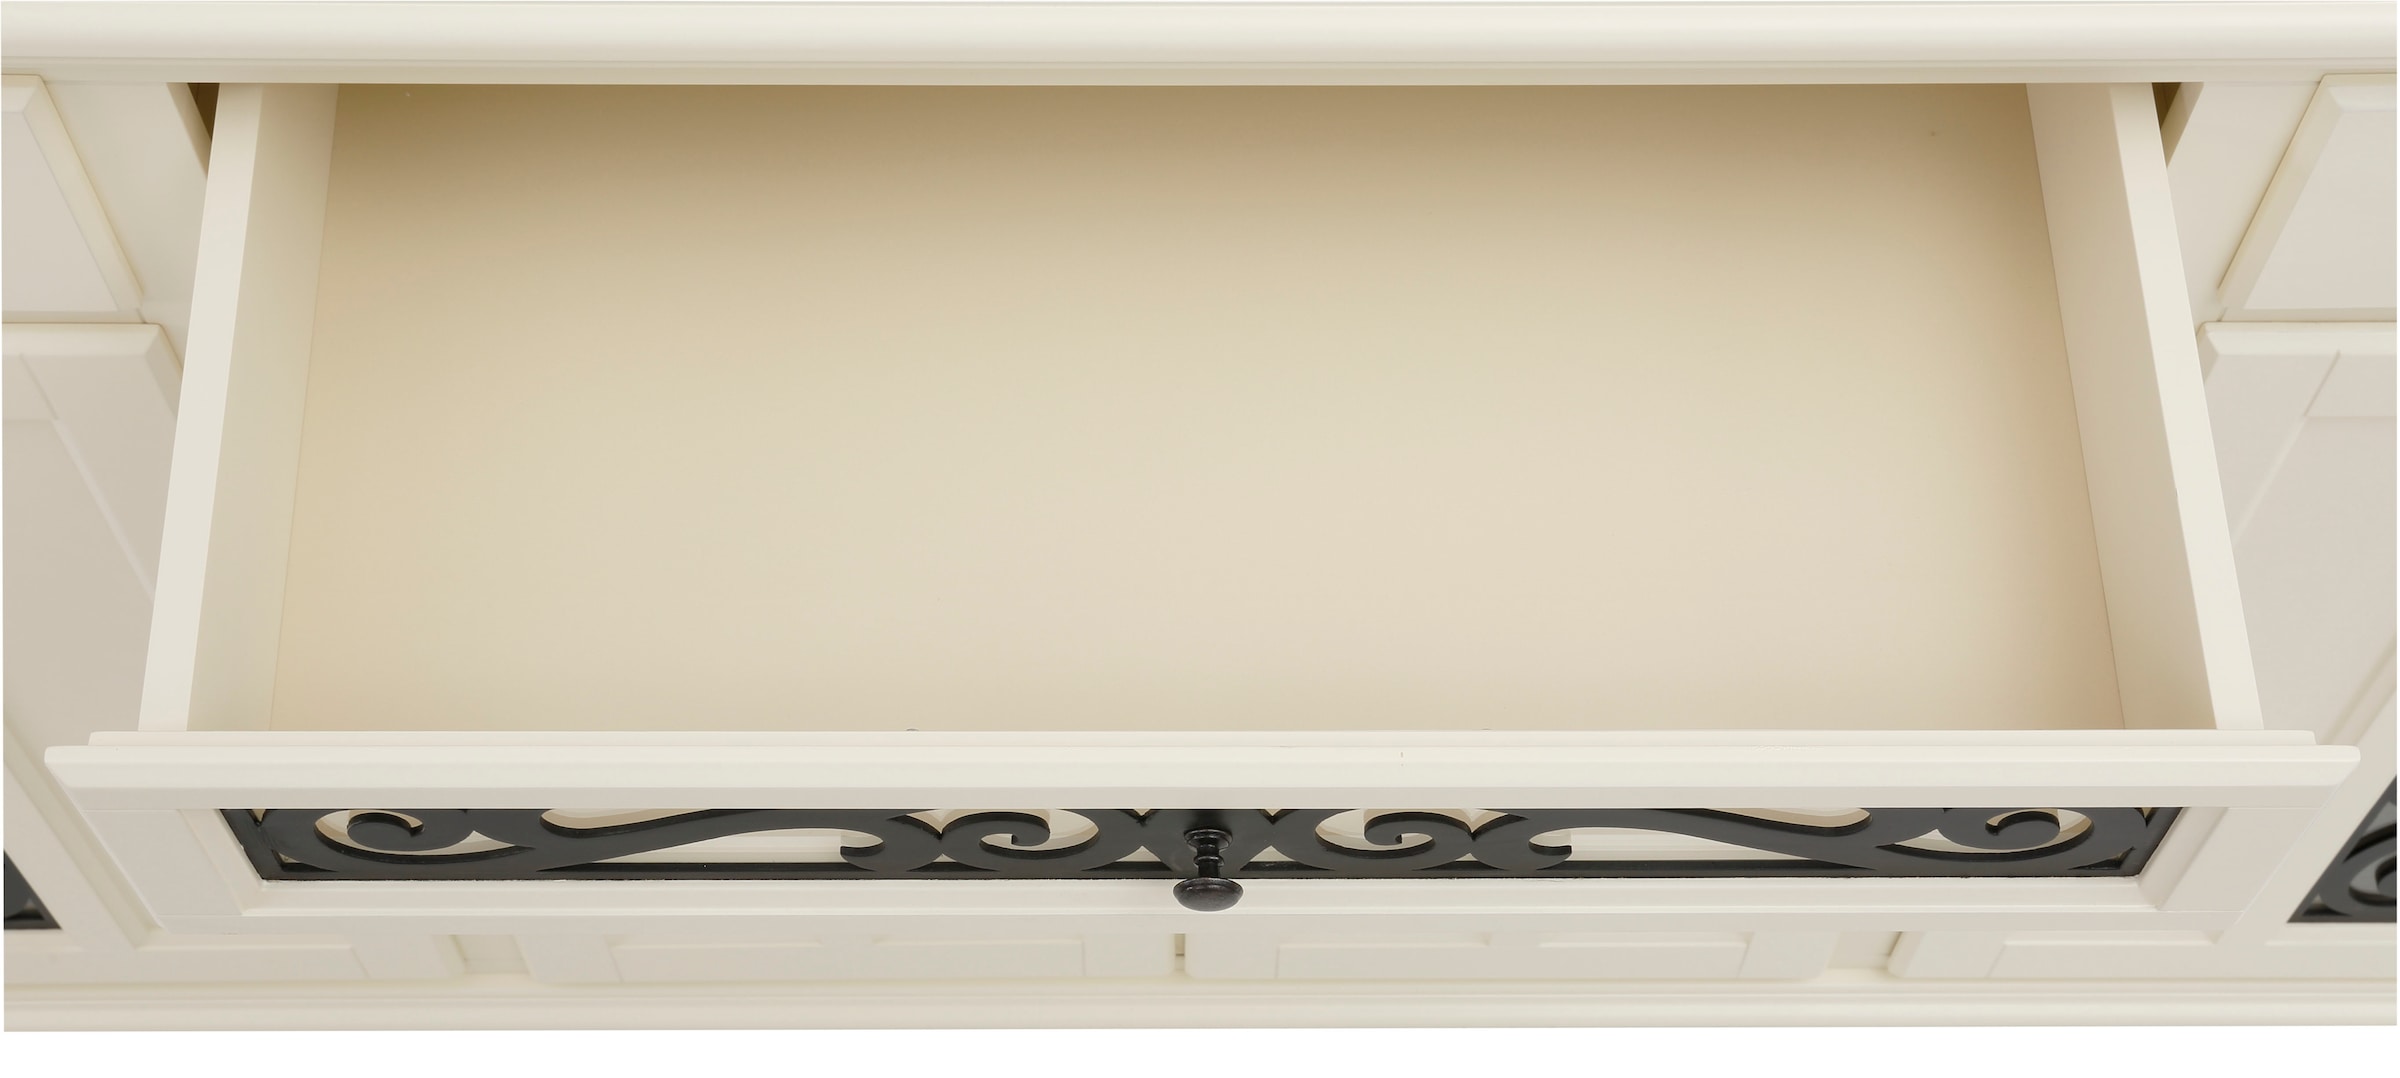 Home affaire Sideboard »Arabesk«, mit dekorativen Fräsungen, viele Stauraummöglichkeiten, Breite 171 cm